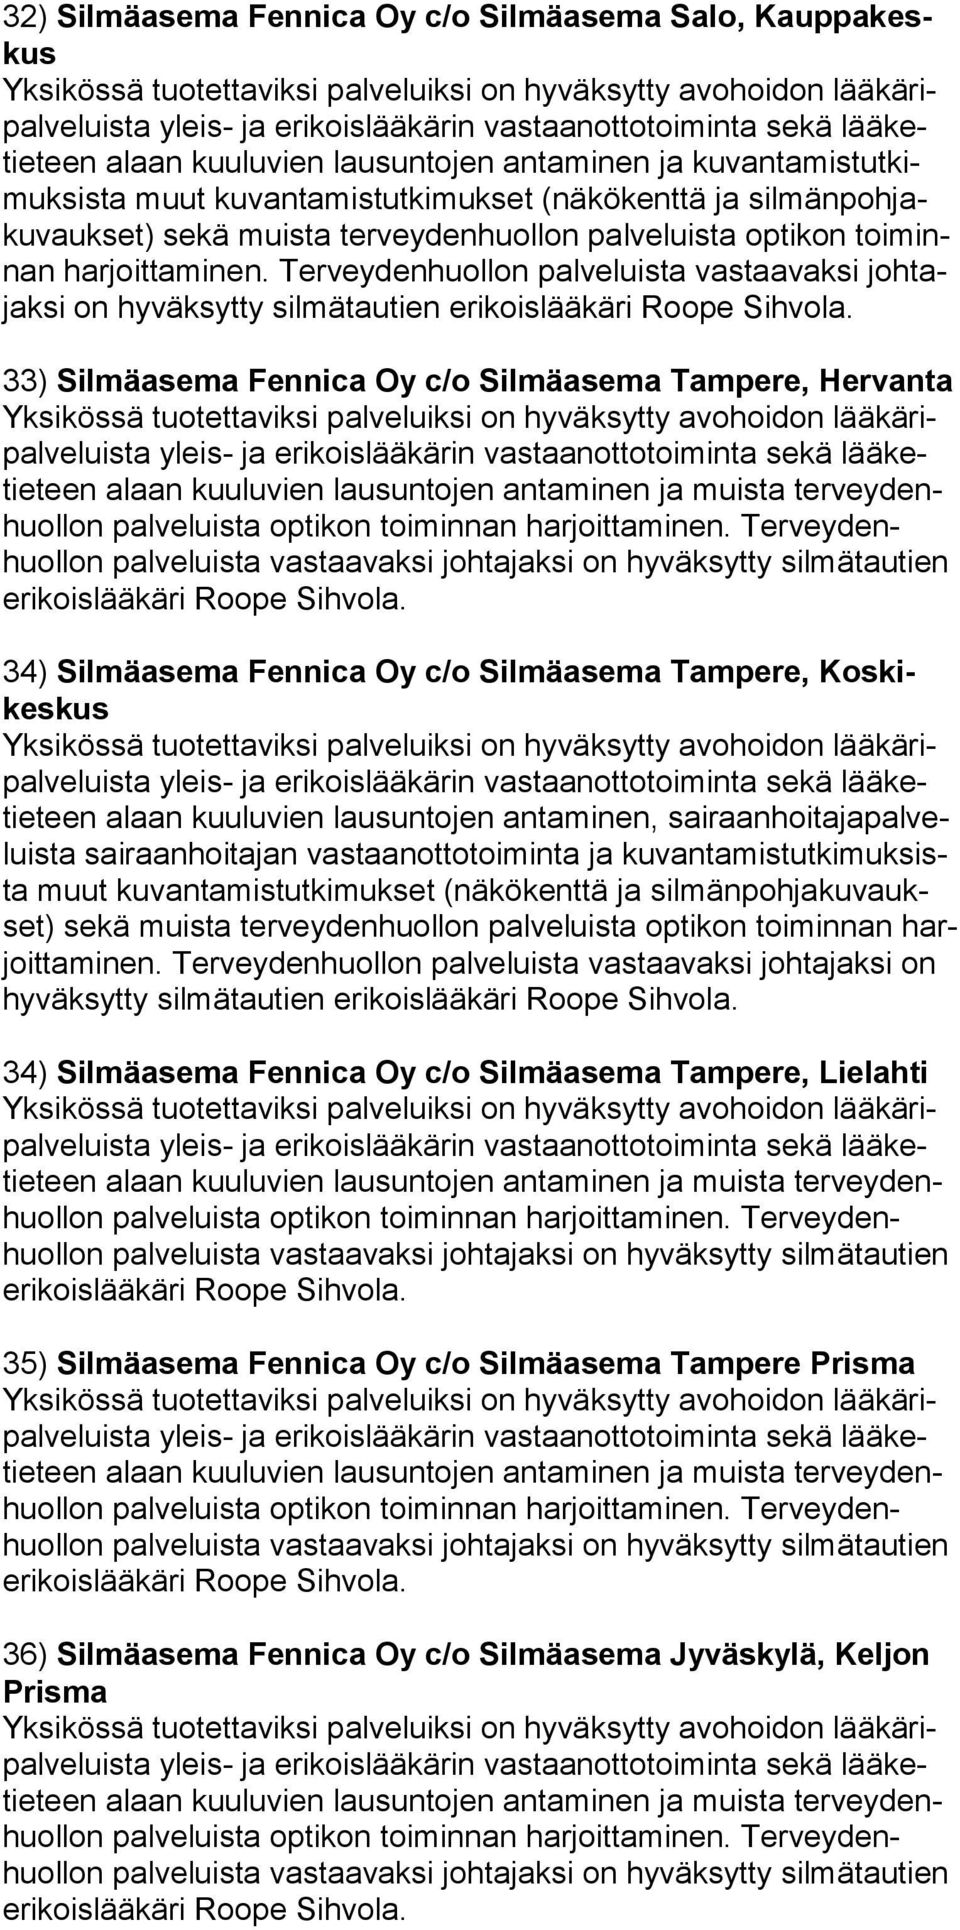 Tampere, Koskikes kus teen alaan kuuluvien lausuntojen antaminen, sairaanhoitajapalveluista sai raanhoitajan vastaanot totoiminta ja ku van ta mis tut ki muk sista muut ku van ta mis tut ki muk set